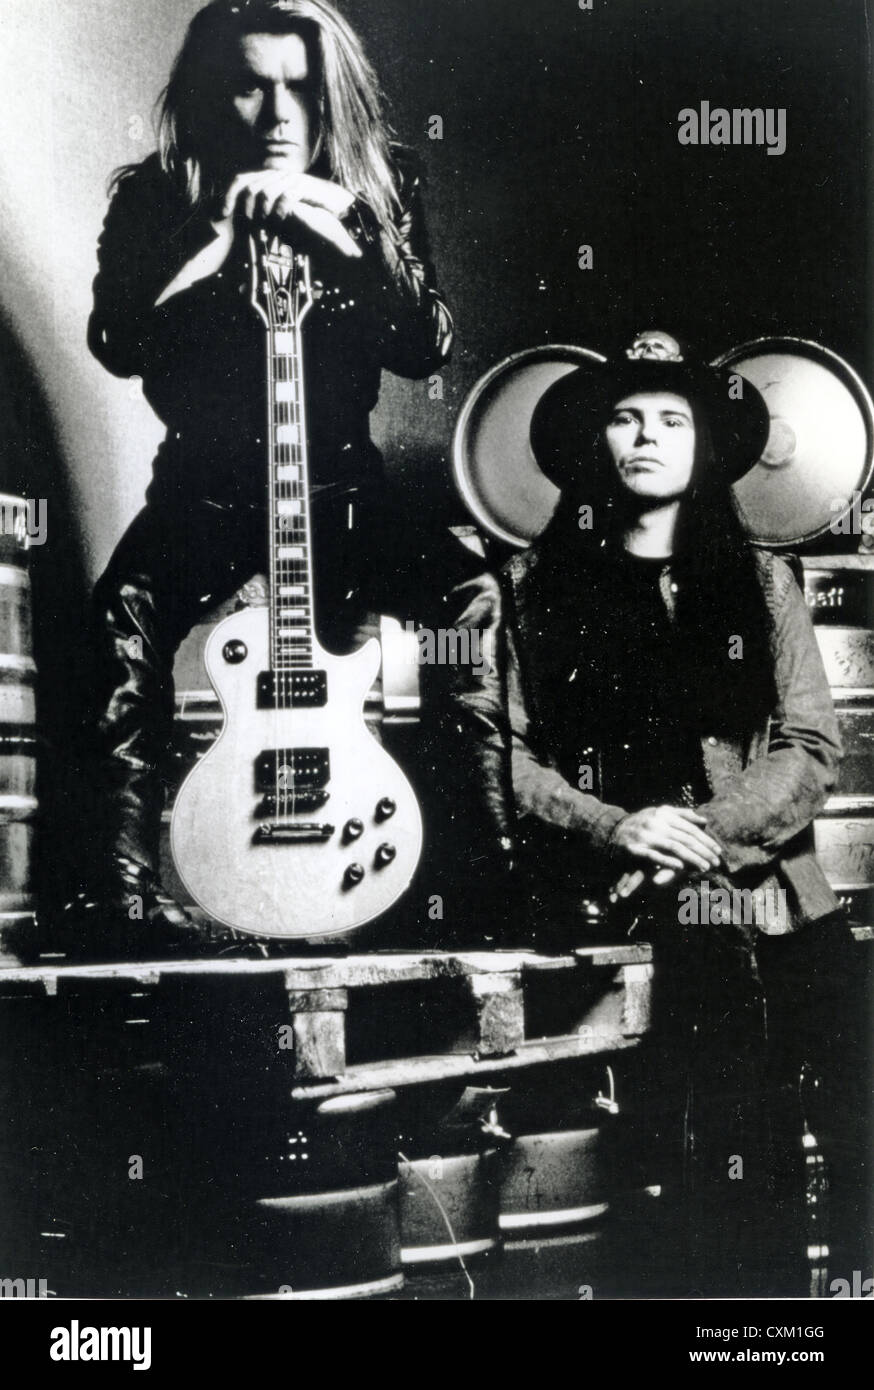 El culto foto promocional del grupo de rock en el Reino Unido alrededor de 1990 con Billy Duffy a la izquierda e Ian Astbury Foto de stock